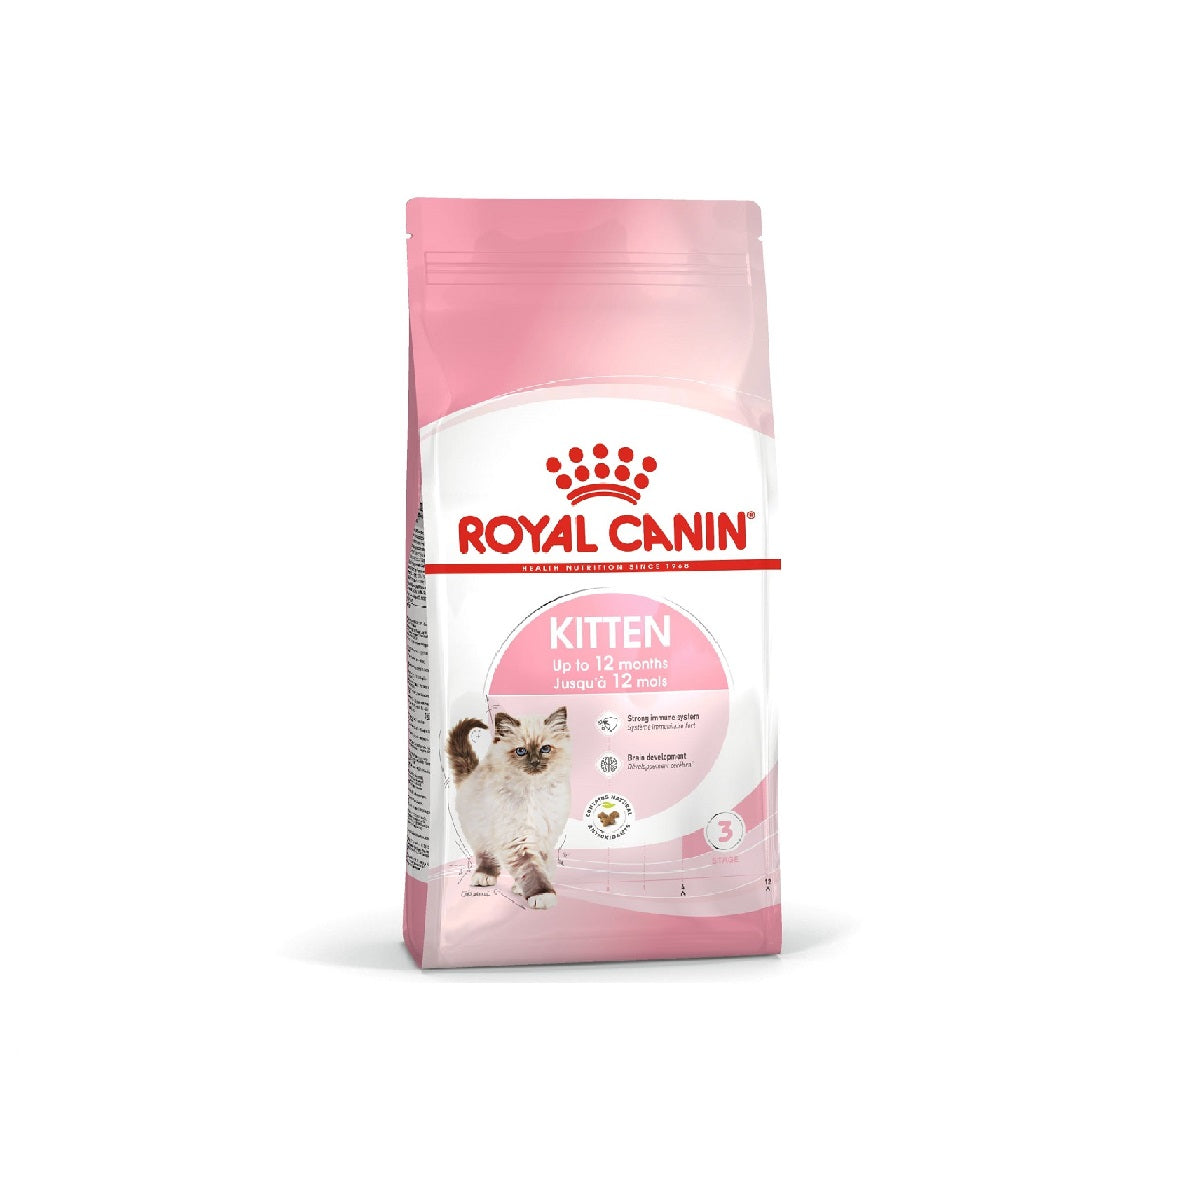 ROYAL CANIN - Kitten